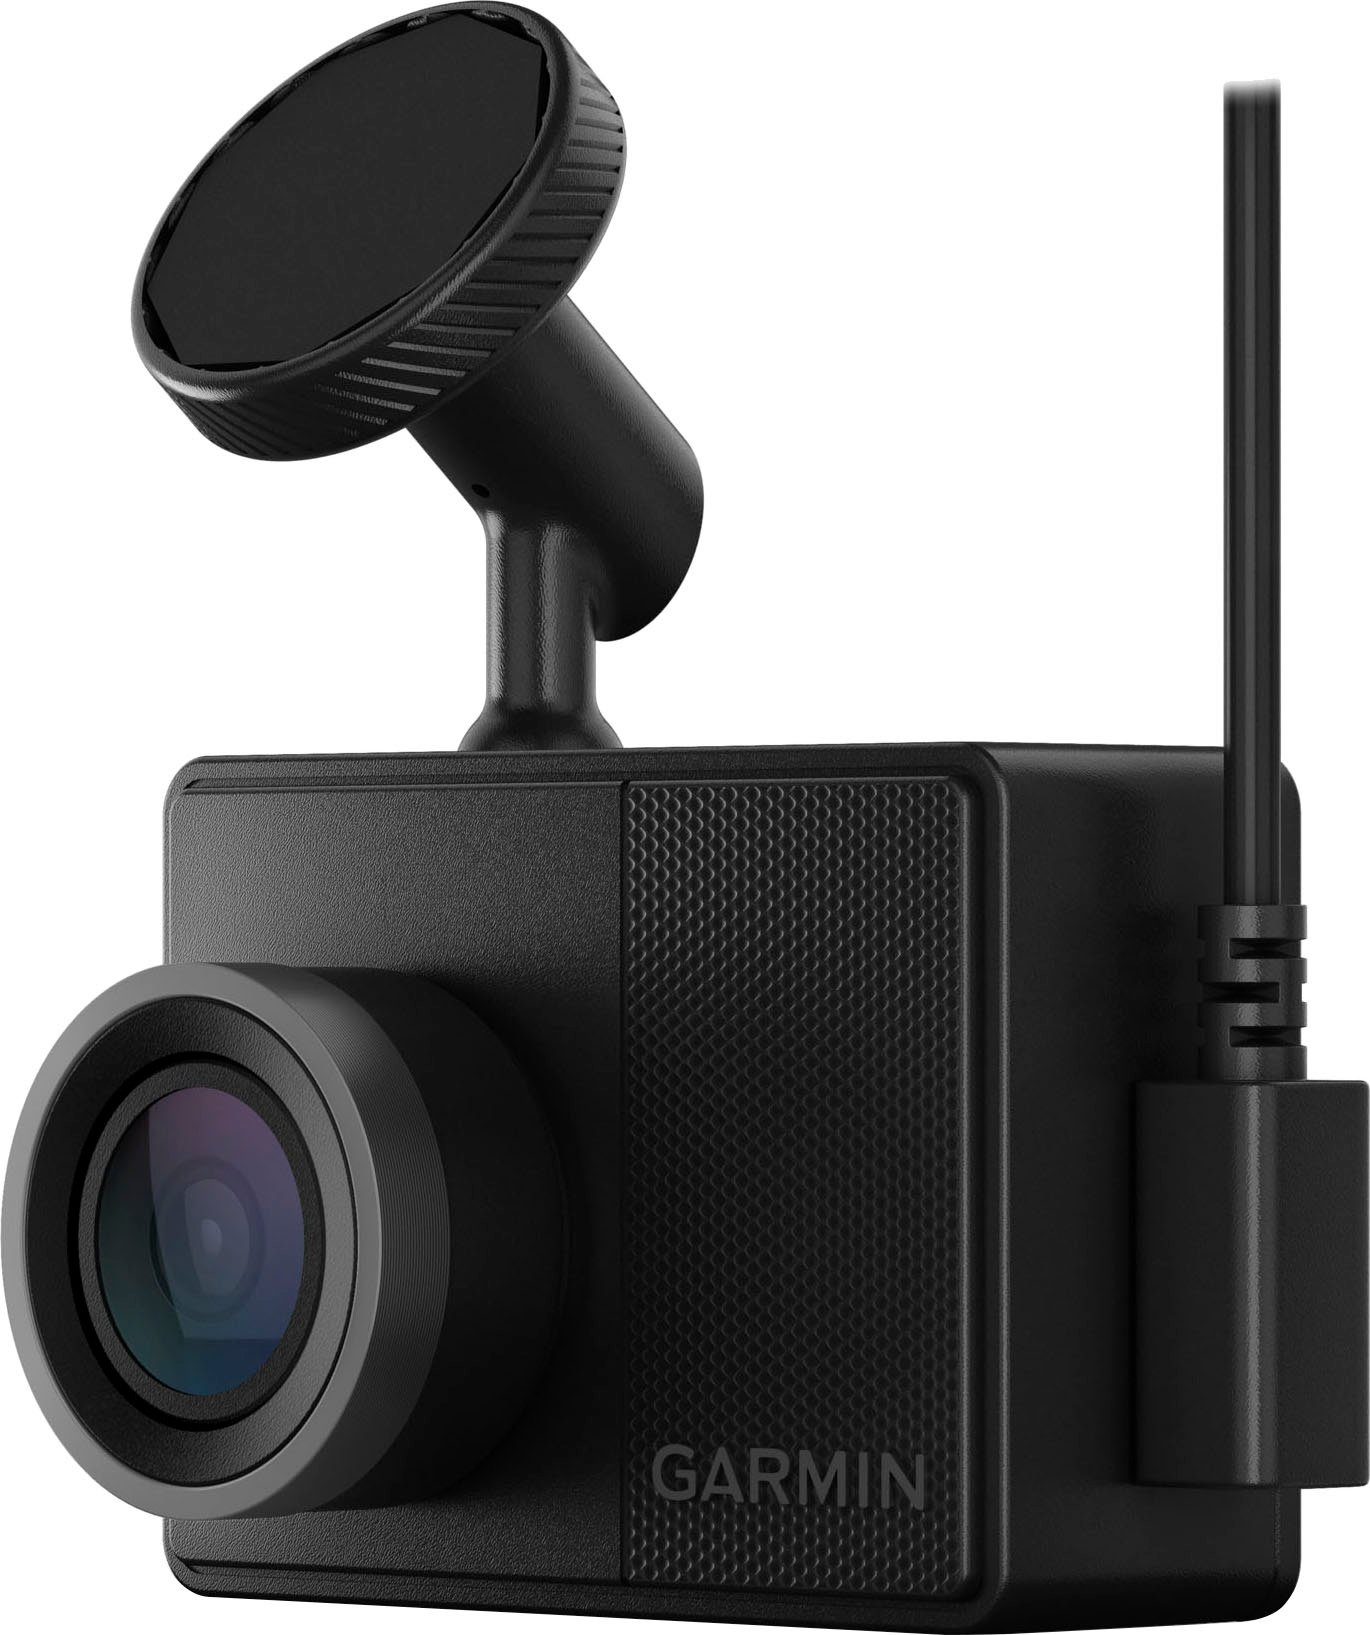 57 (Wi-Fi) Dashcam (WQHD, Garmin Dash Bluetooth, WLAN Cam™